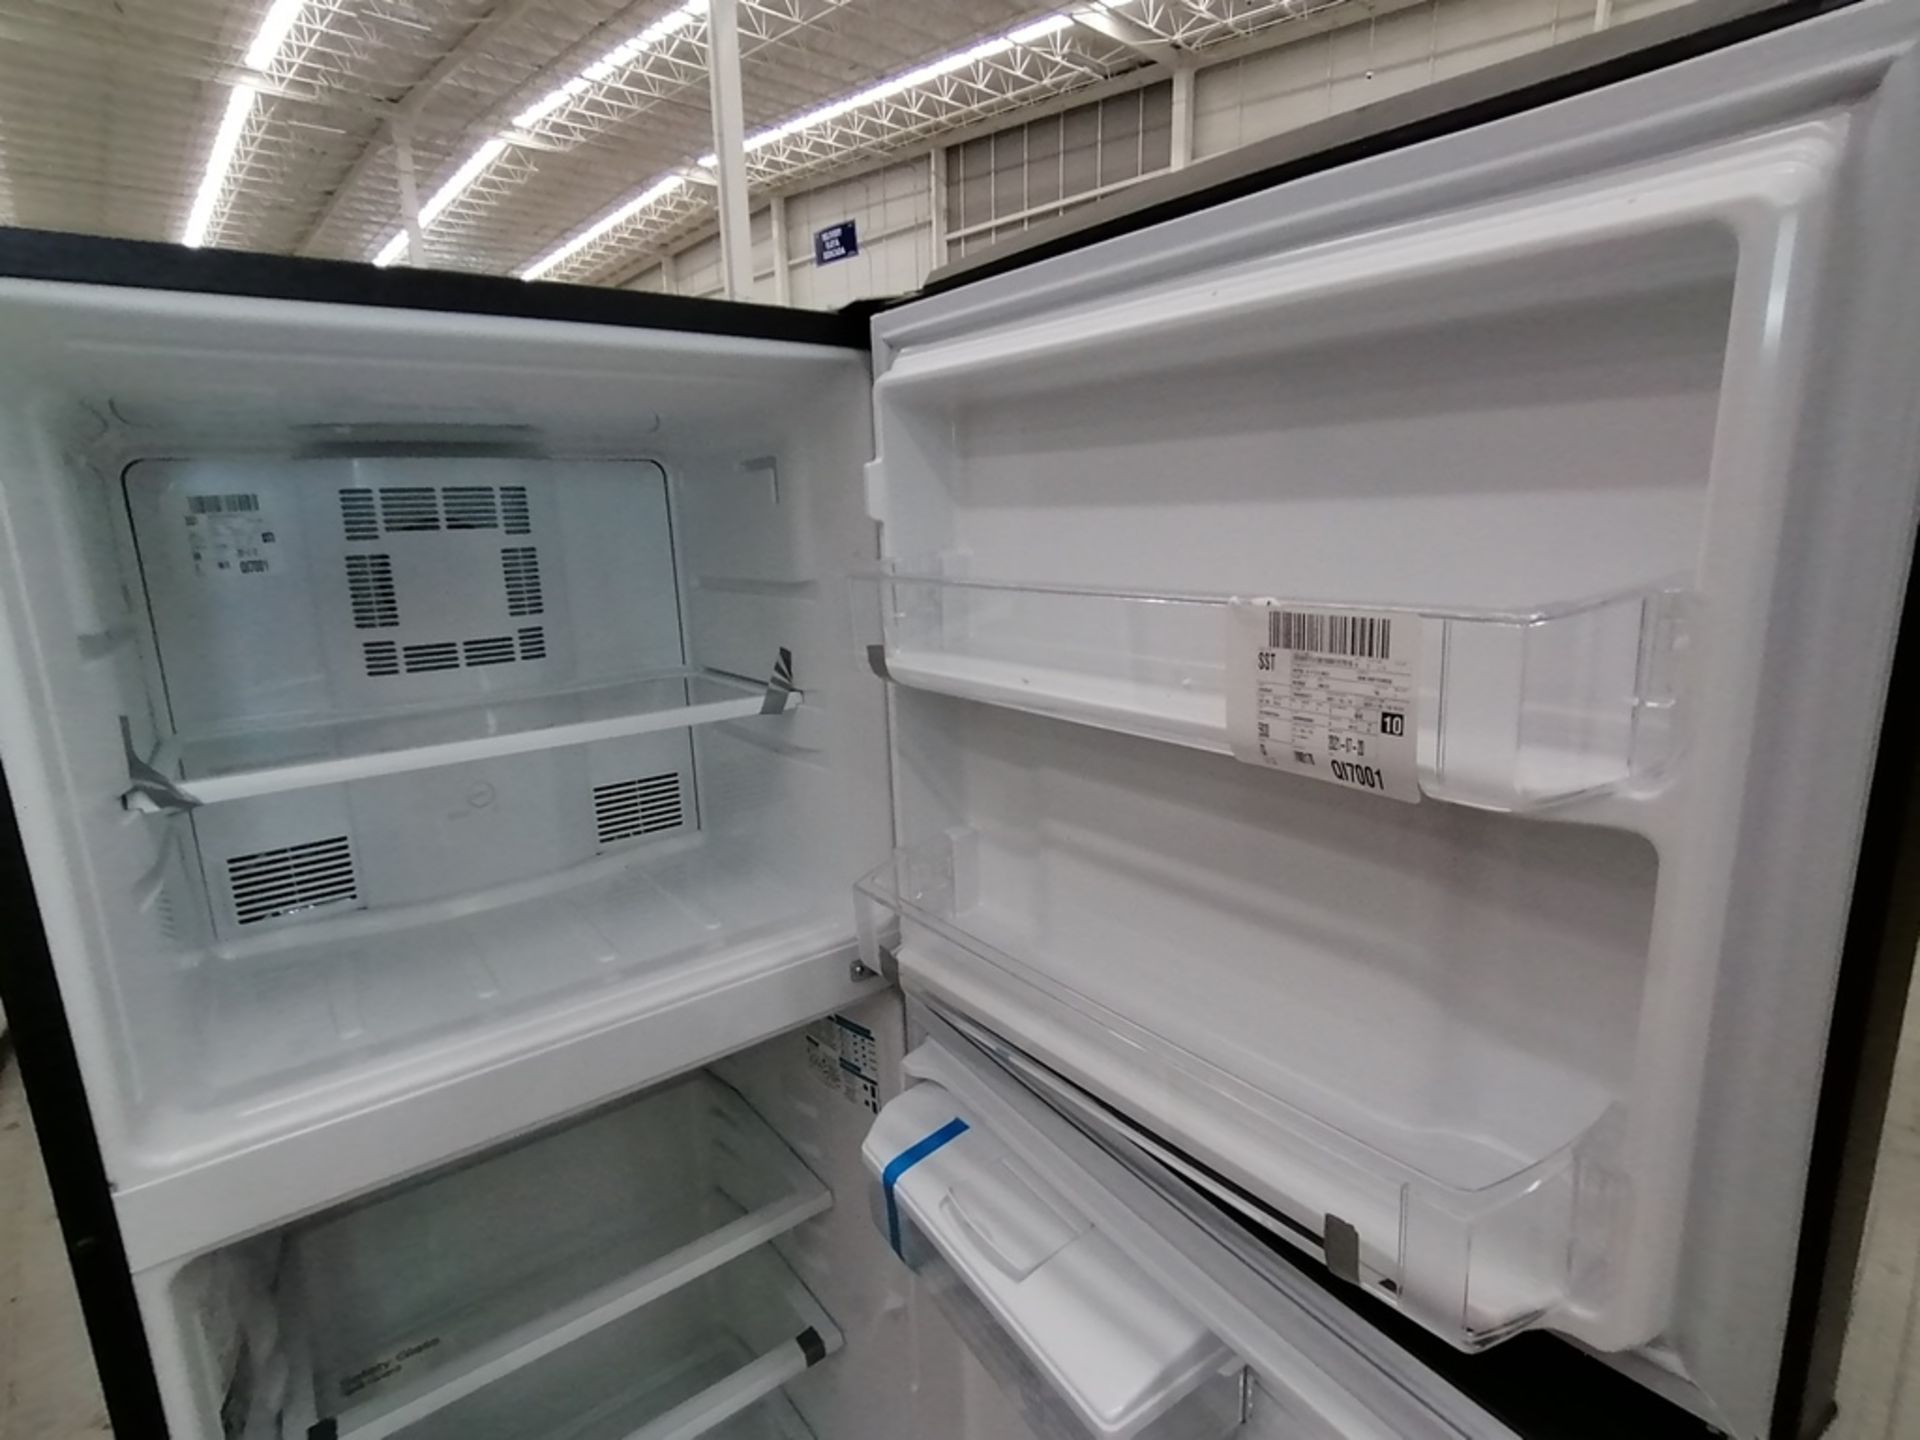 Lote de 2 Refrigeradores incluye: 1 Refrigerador, Marca Winia, Modelo DFR32210GNV, Serie MR217N104 - Image 6 of 15